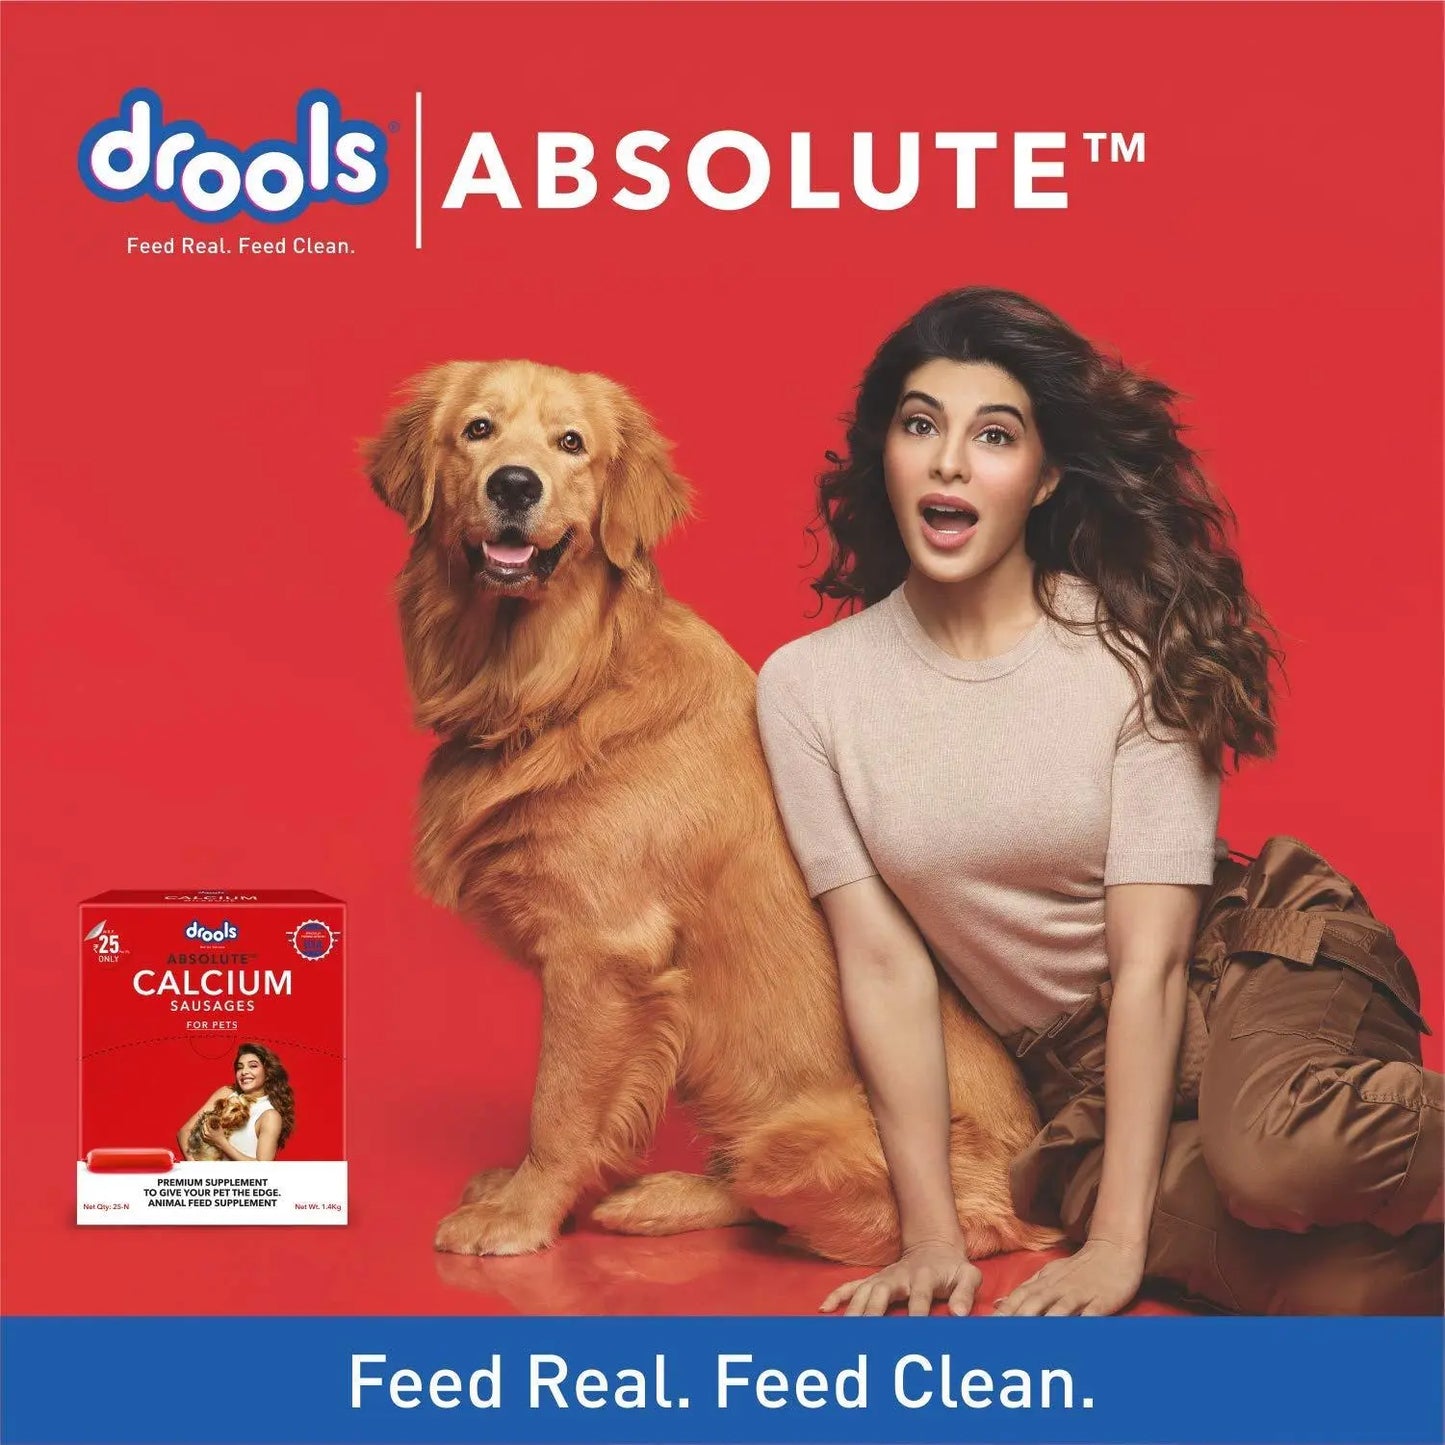 Drools Absolute Calcium Sausage, Dog Supplement, 18 Pieces, 1.4 kg Amanpetshop